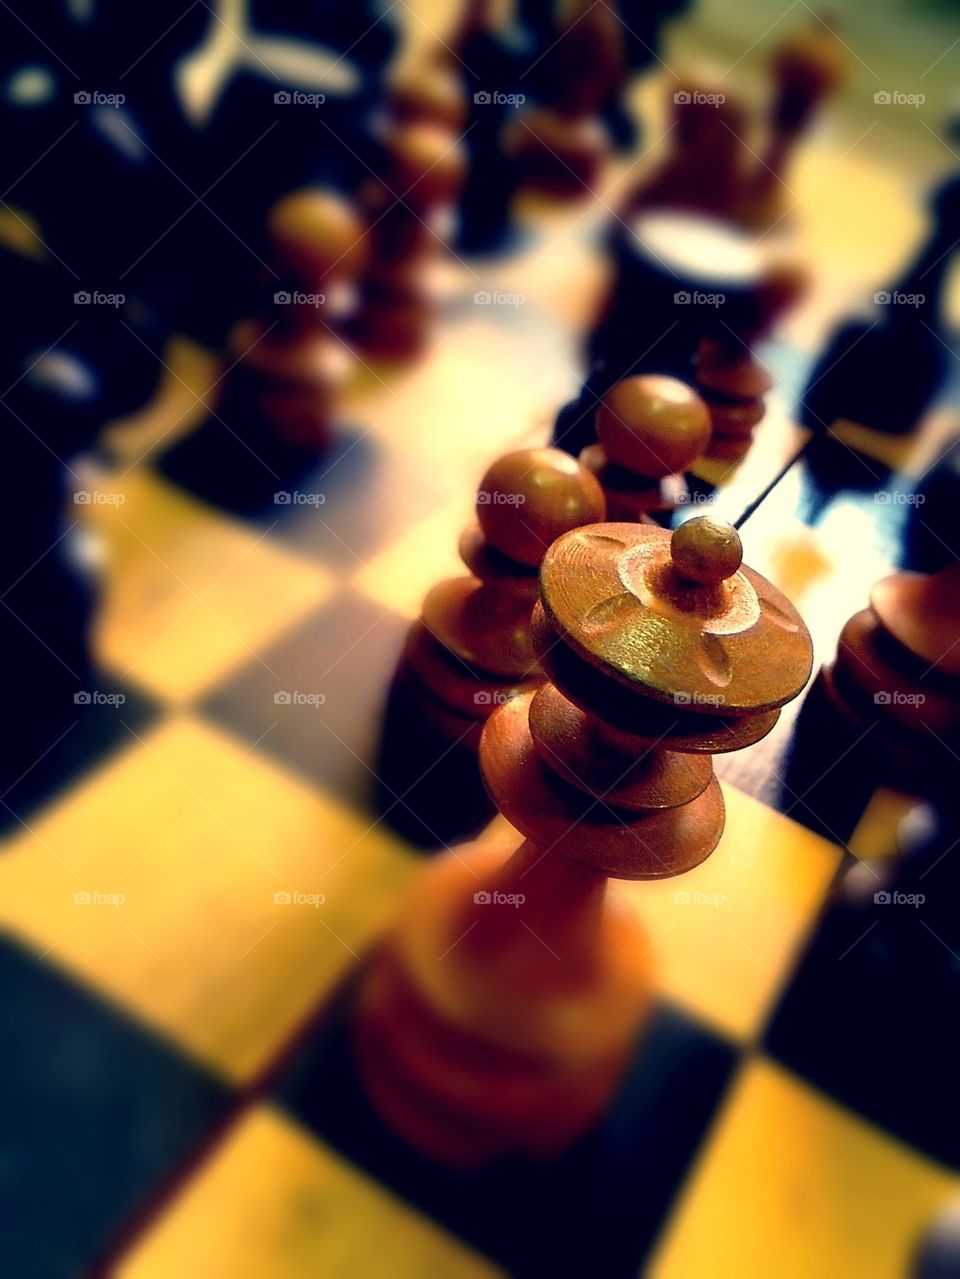 Chess piece - queen